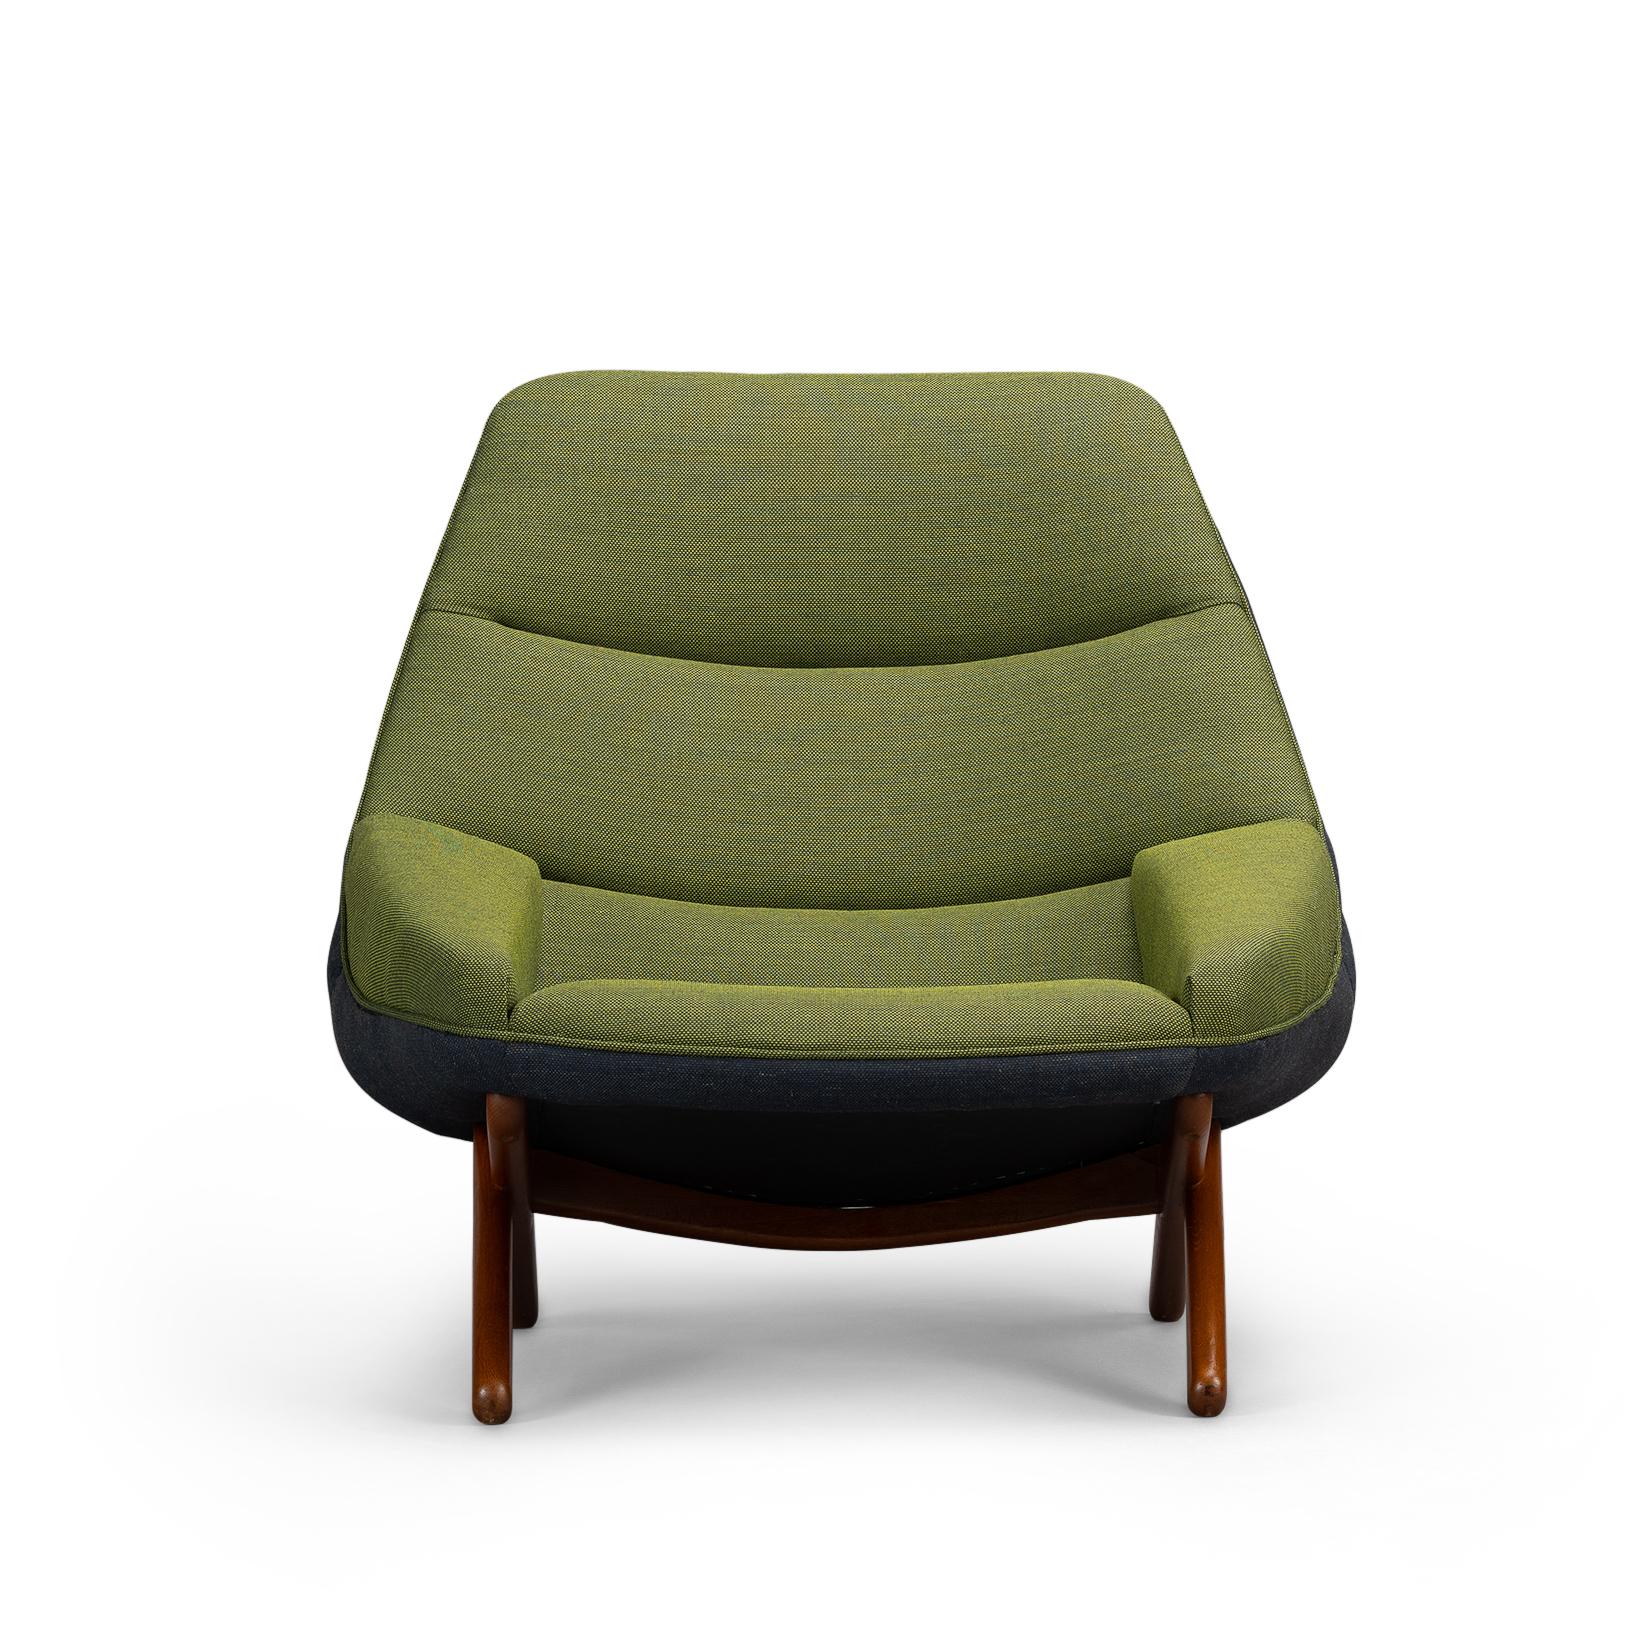 Dieser bequeme Sessel ML-91 ist eindeutig als Design von Illum Wikkelso zu erkennen. Dieser Stuhl wurde Mitte der 1960er Jahre von der Michael Laursen Fabrik hergestellt. Ein ziemlich unkonventionelles Design mit gekreuzten massiven Teakholzbeinen,